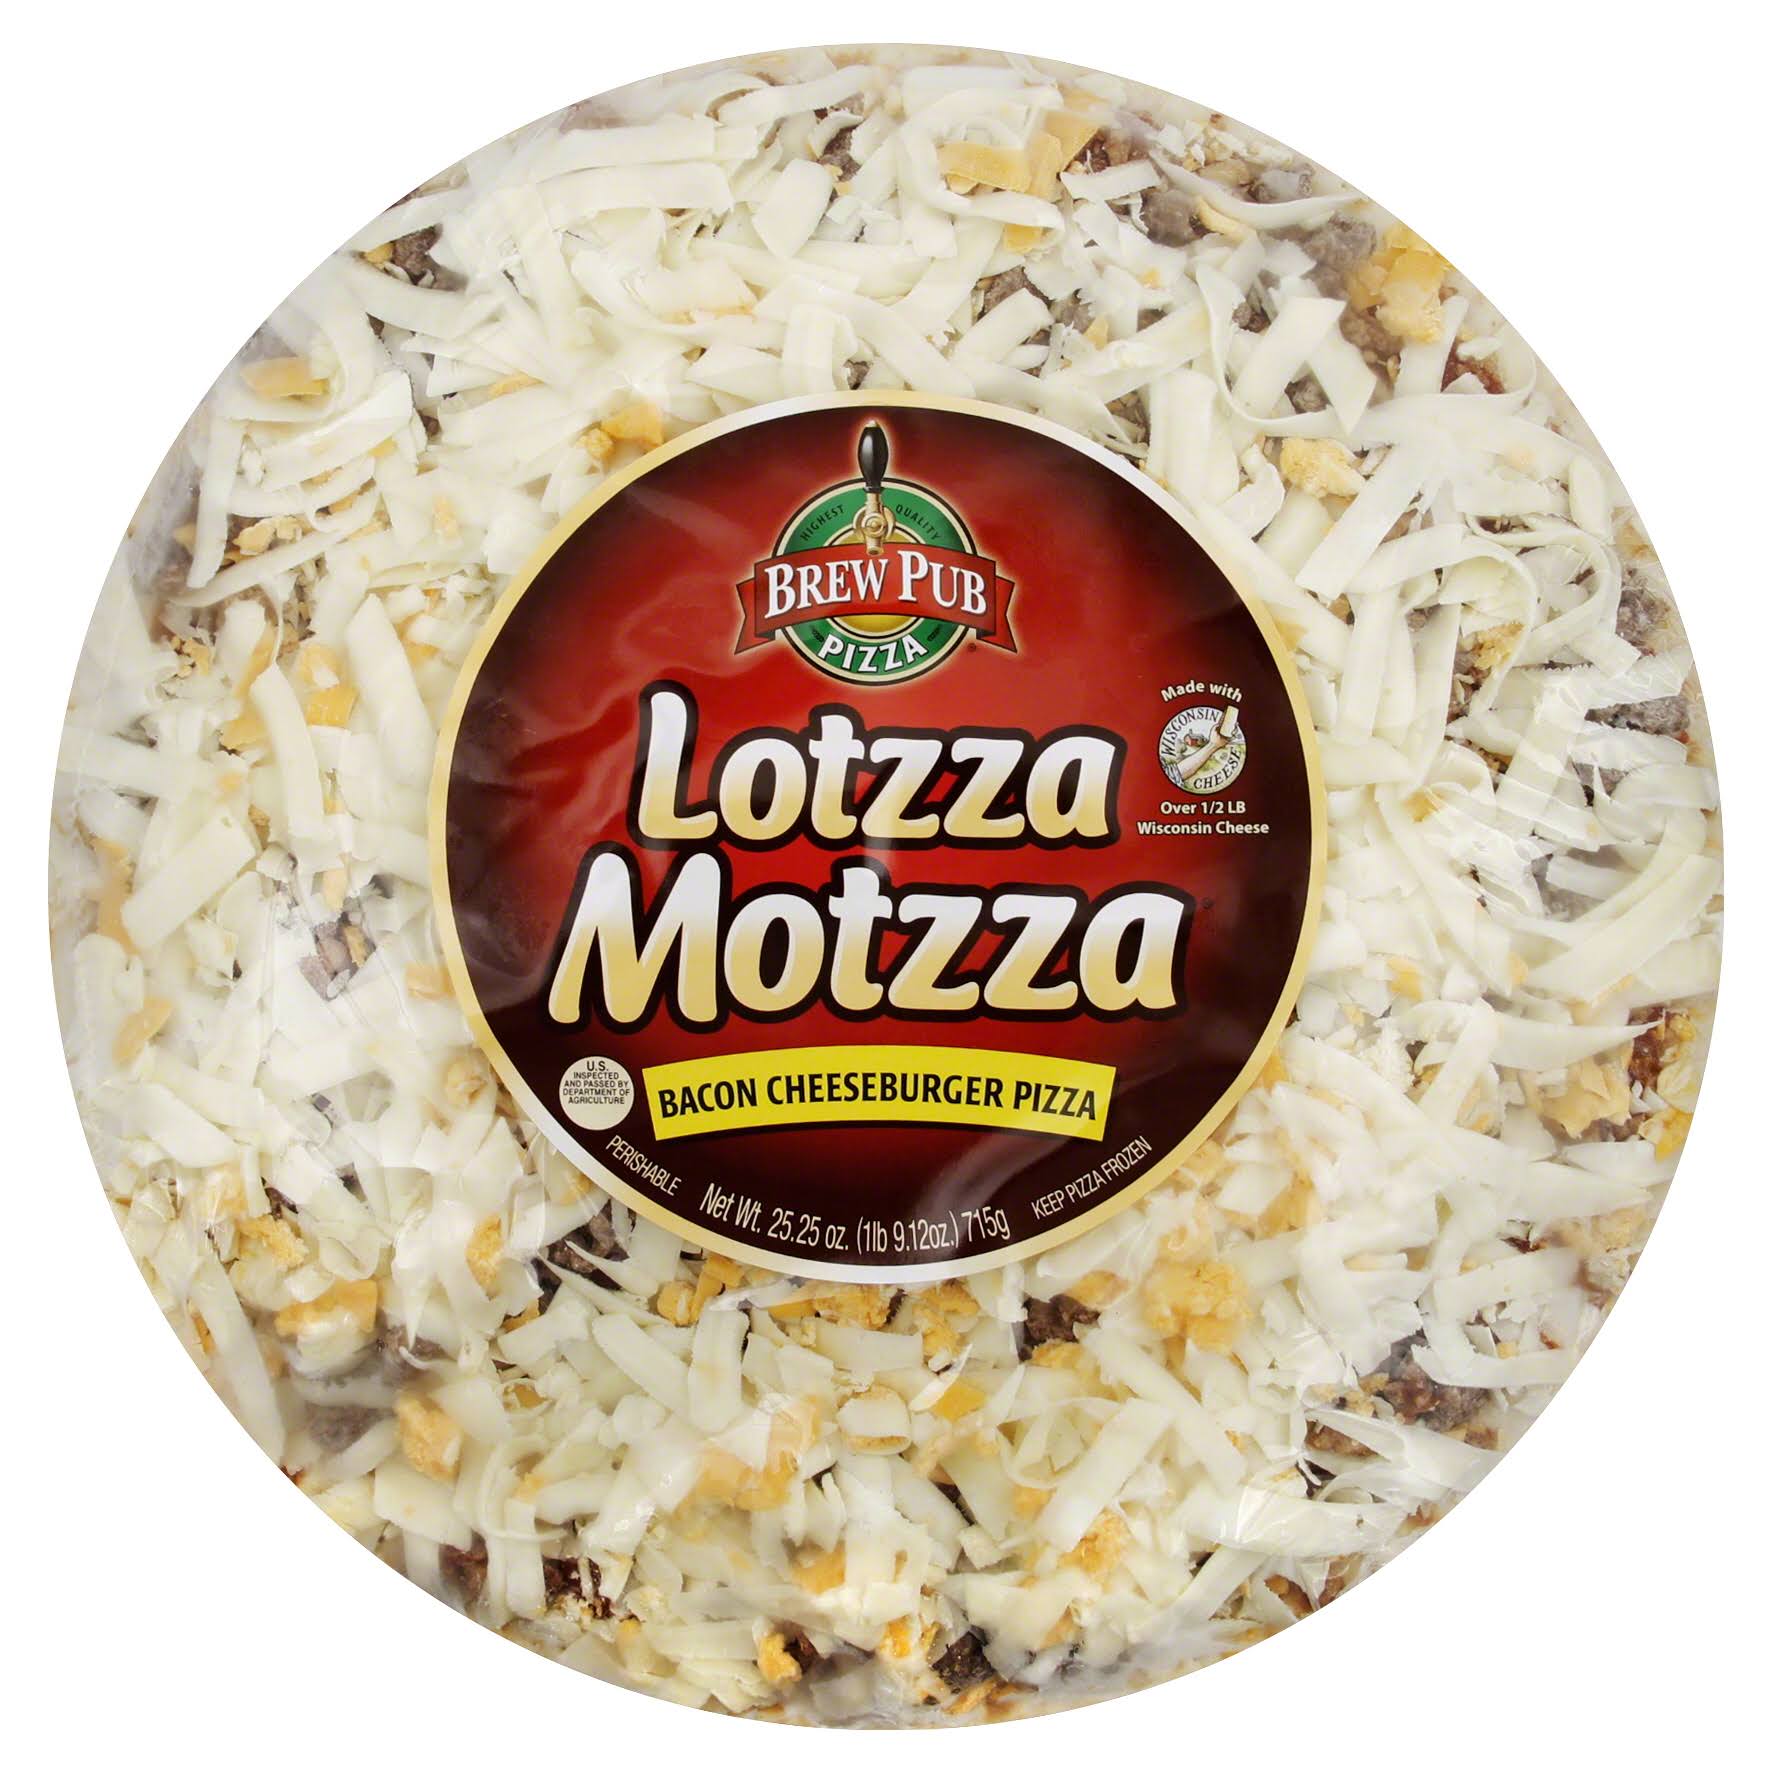 Brew Pub Lotzza Motzza Pizza, 12-Inch, Bacon Cheeseburger Pizza - 25.25 oz